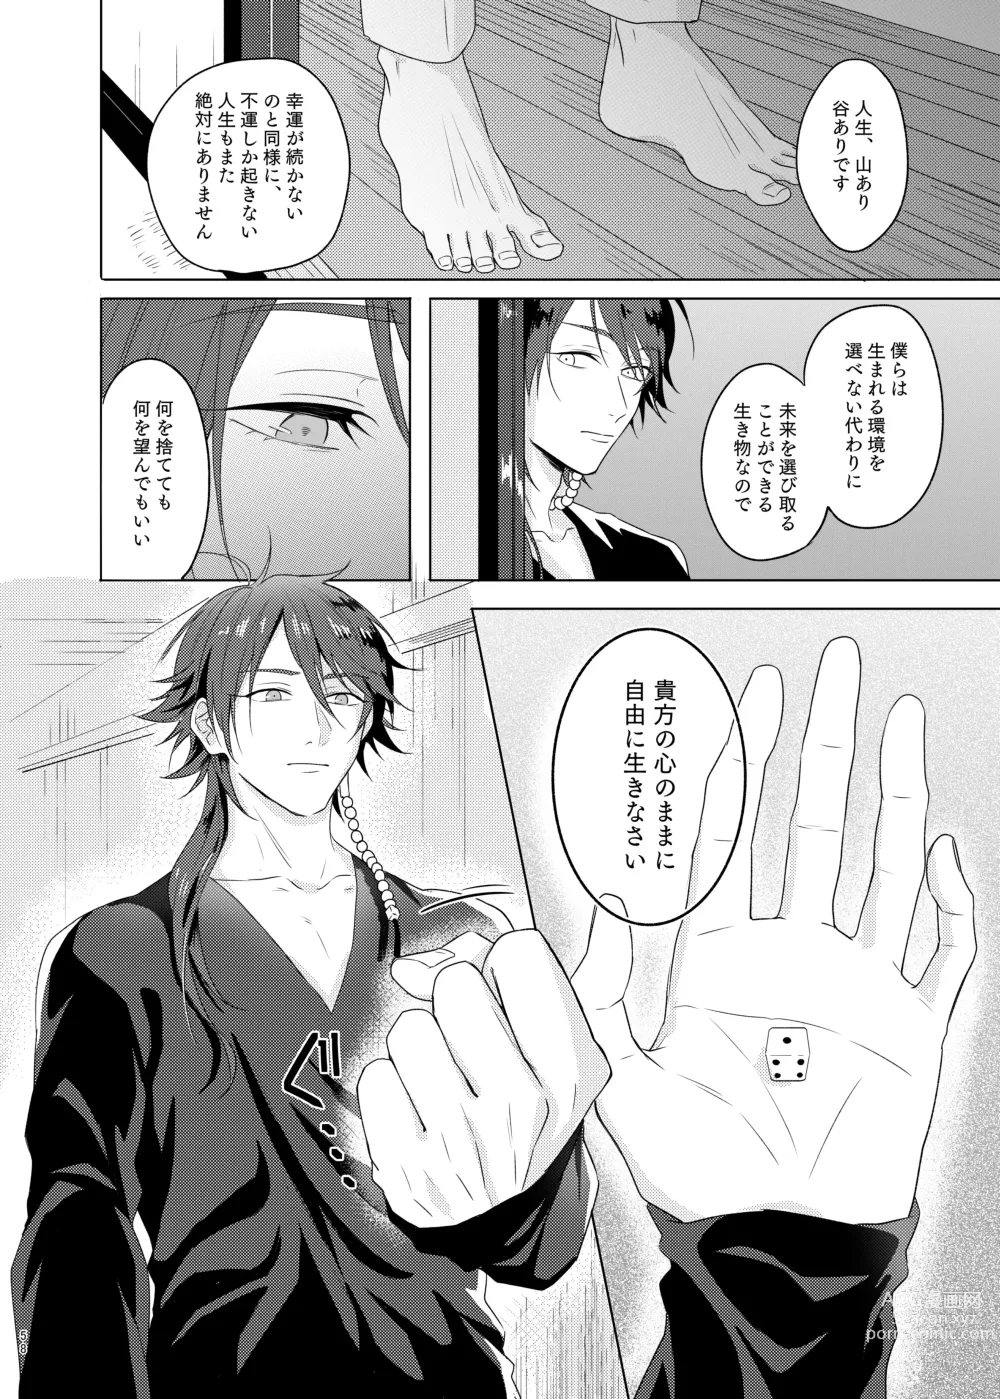 Page 58 of doujinshi Kami sama no ko